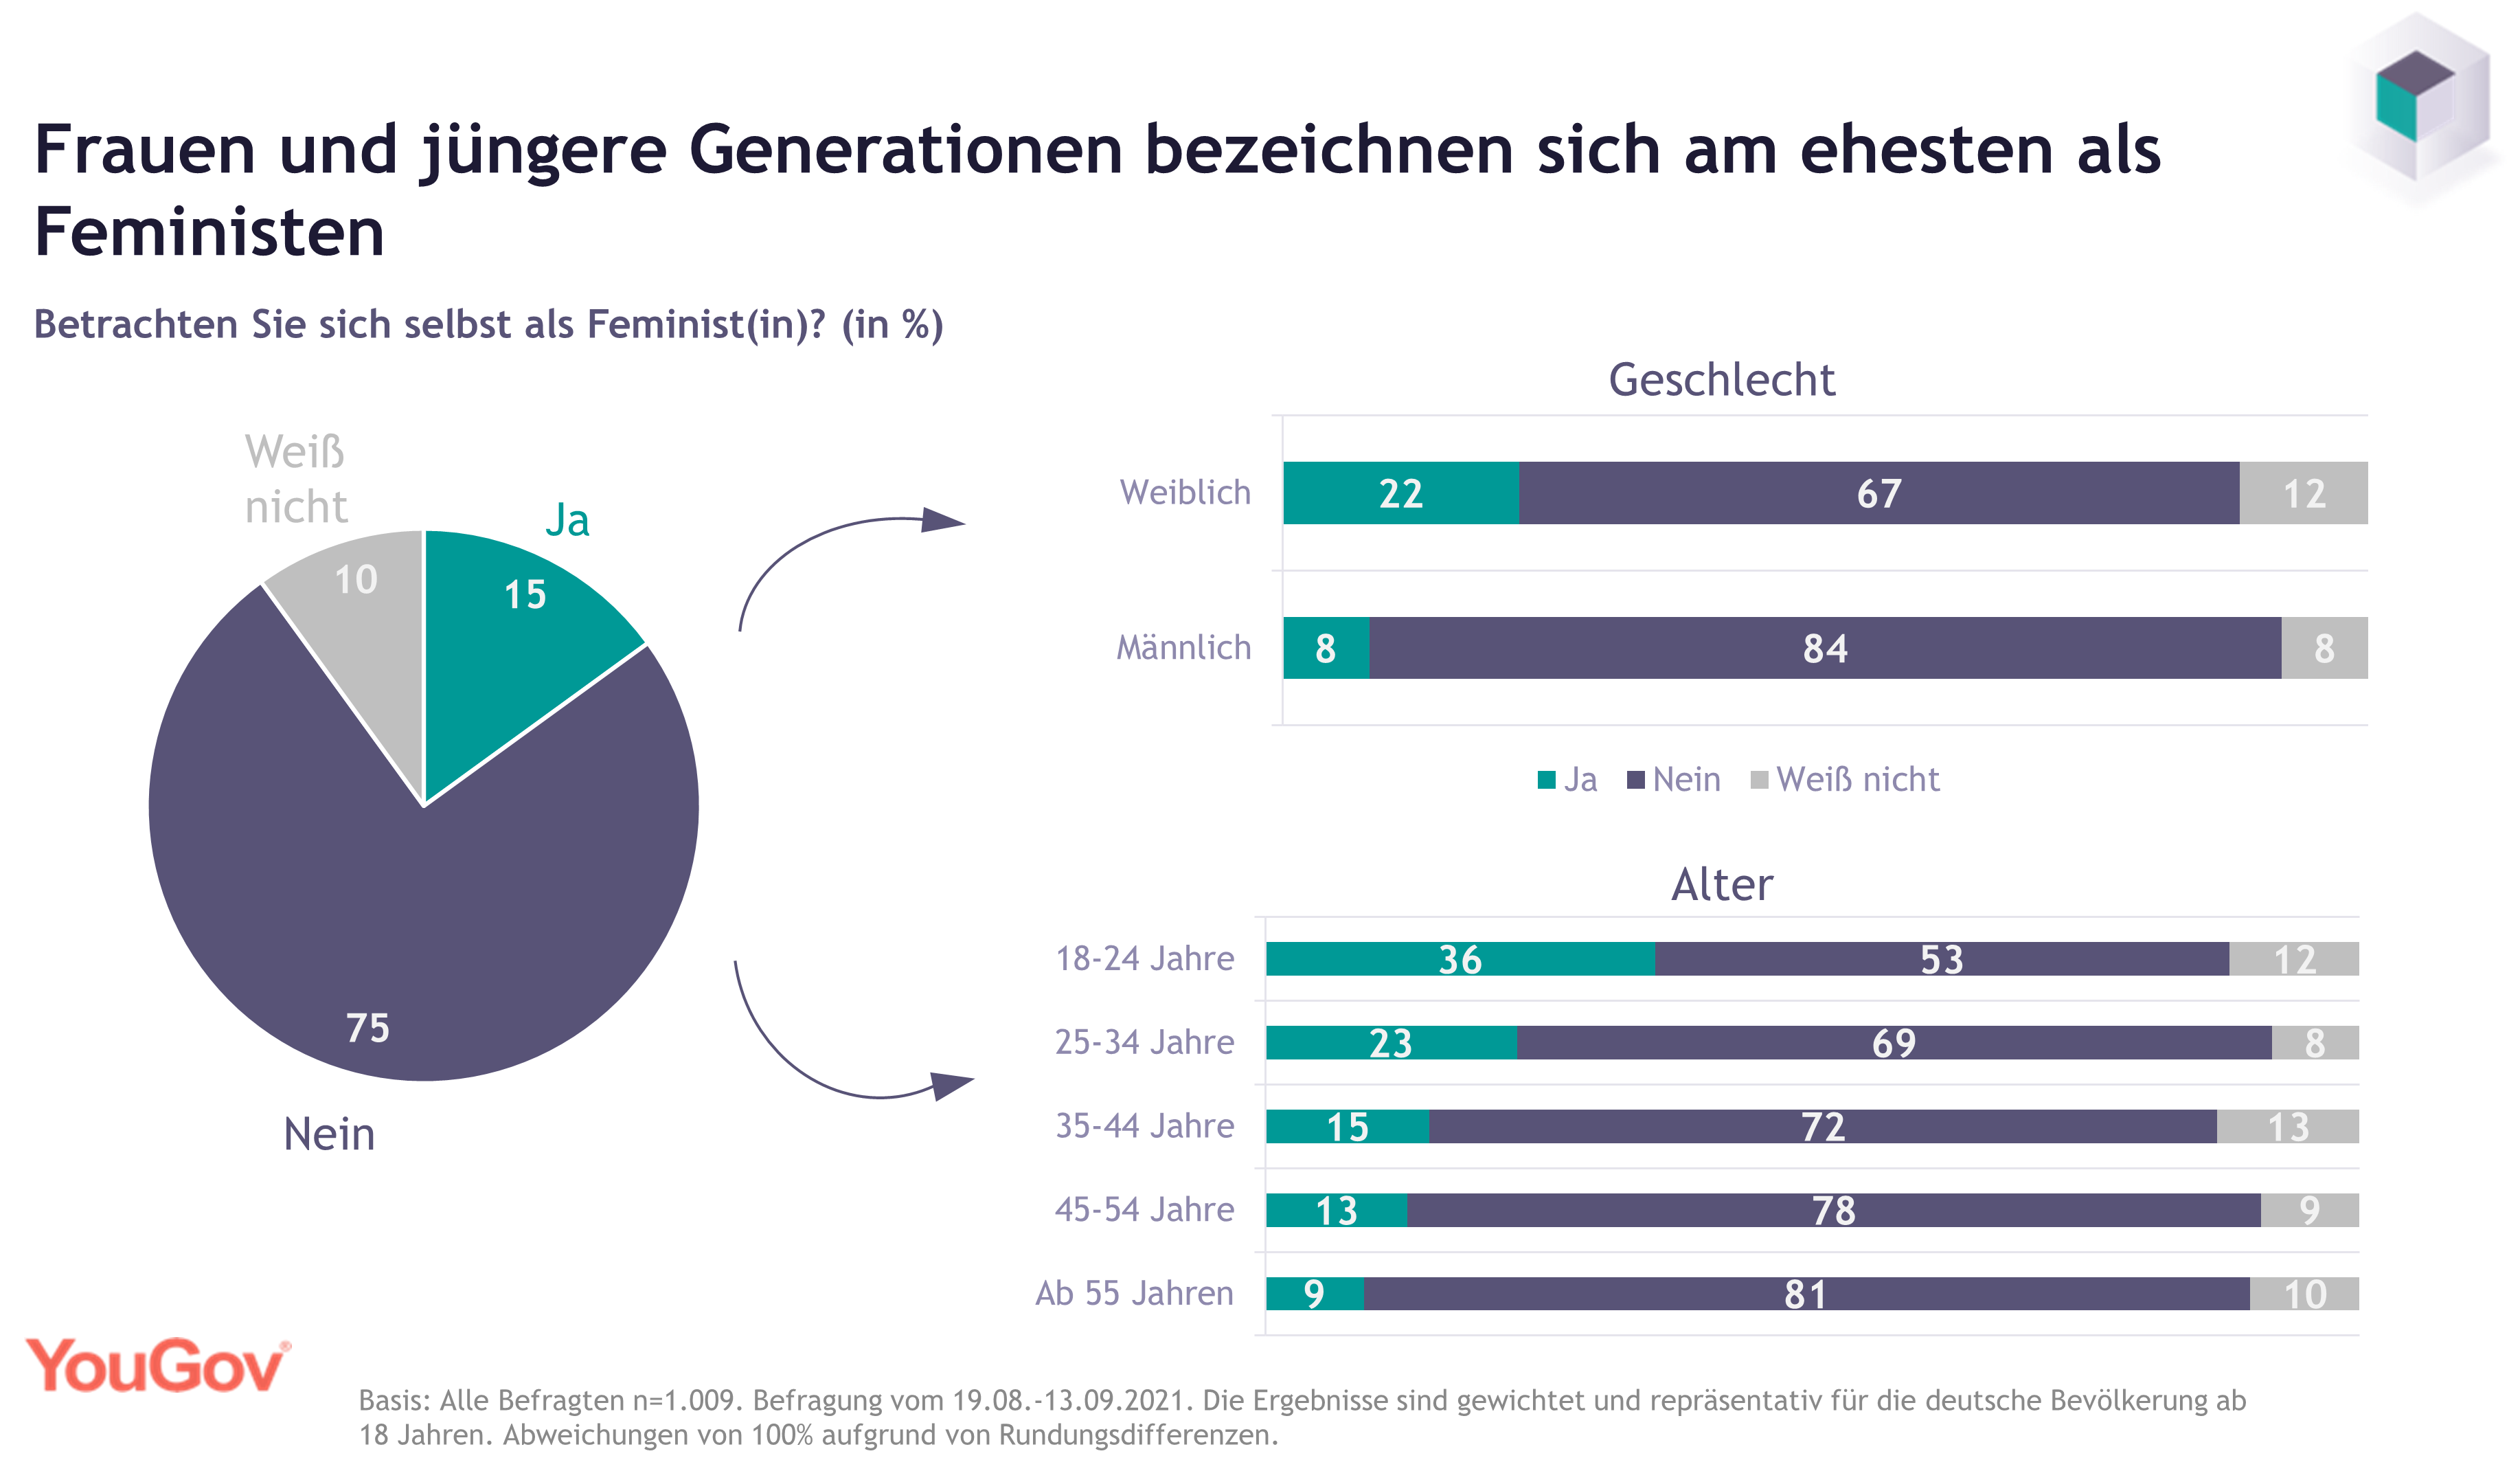 15 Prozent der Deutschen bezeichnen sich als Feministen